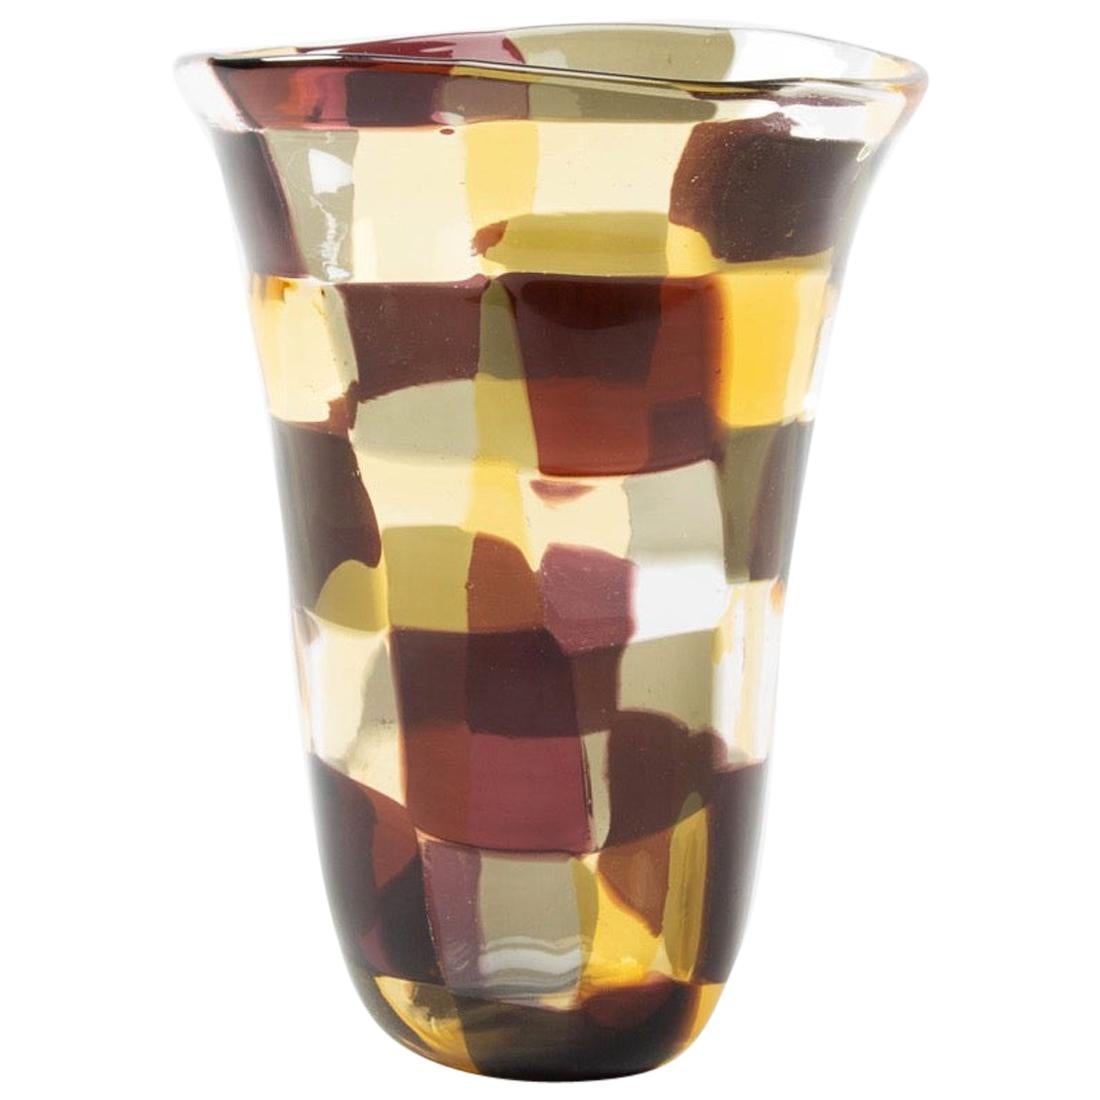 Venini Murano Fulvio Bianconi Glass Vase, "Pezzato" Technique, "Istanbul" Color